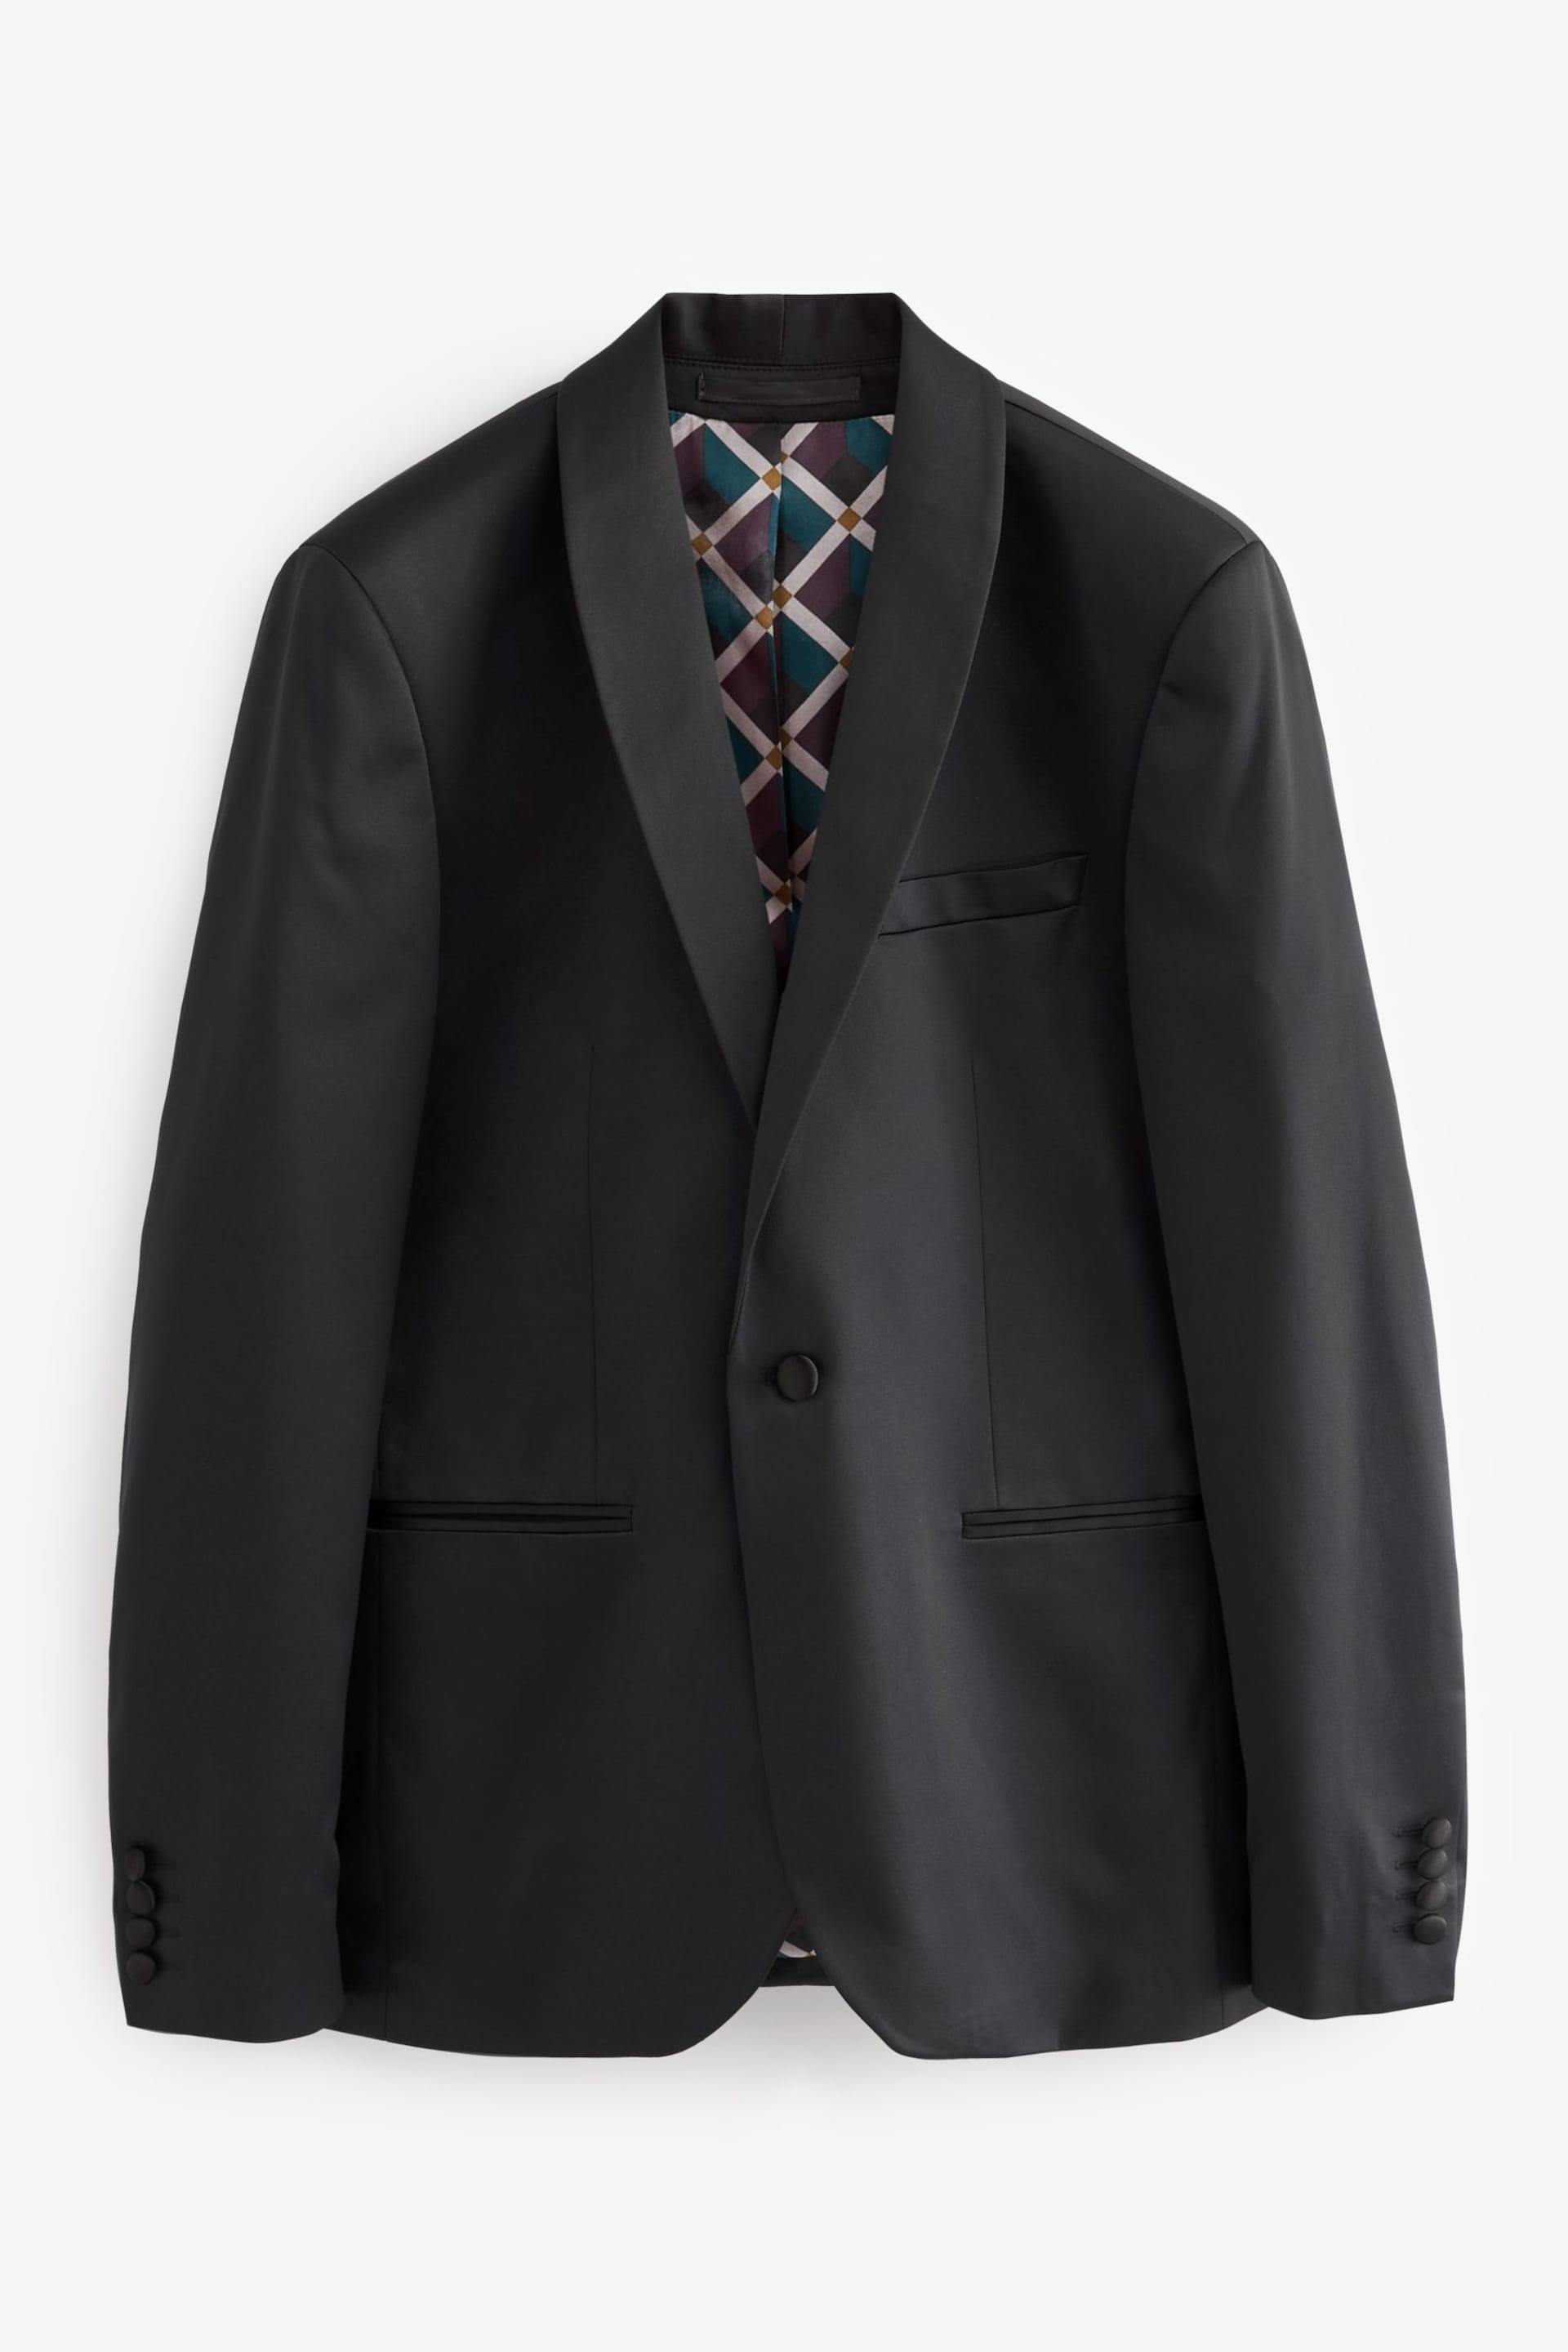 Black Satin Tuxedo Jacket - Image 6 of 10